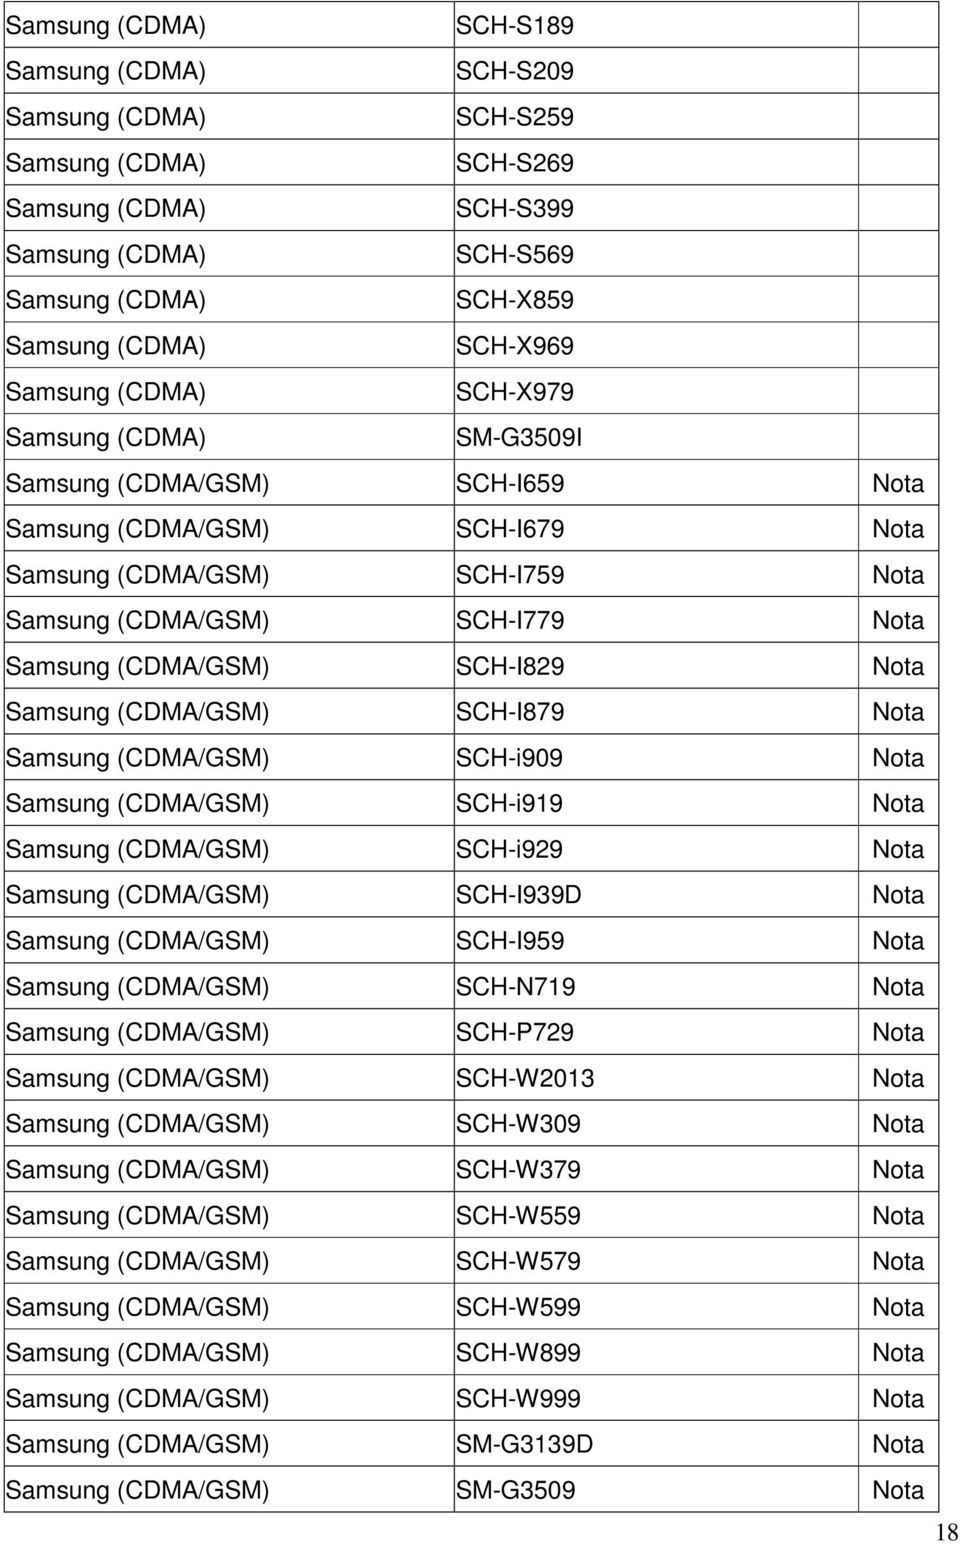 (CDMA/GSM) SCH-I939D Nota Samsung (CDMA/GSM) SCH-I959 Nota Samsung (CDMA/GSM) SCH-N719 Nota Samsung (CDMA/GSM) SCH-P729 Nota Samsung (CDMA/GSM) SCH-W2013 Nota Samsung (CDMA/GSM) SCH-W309 Nota Samsung